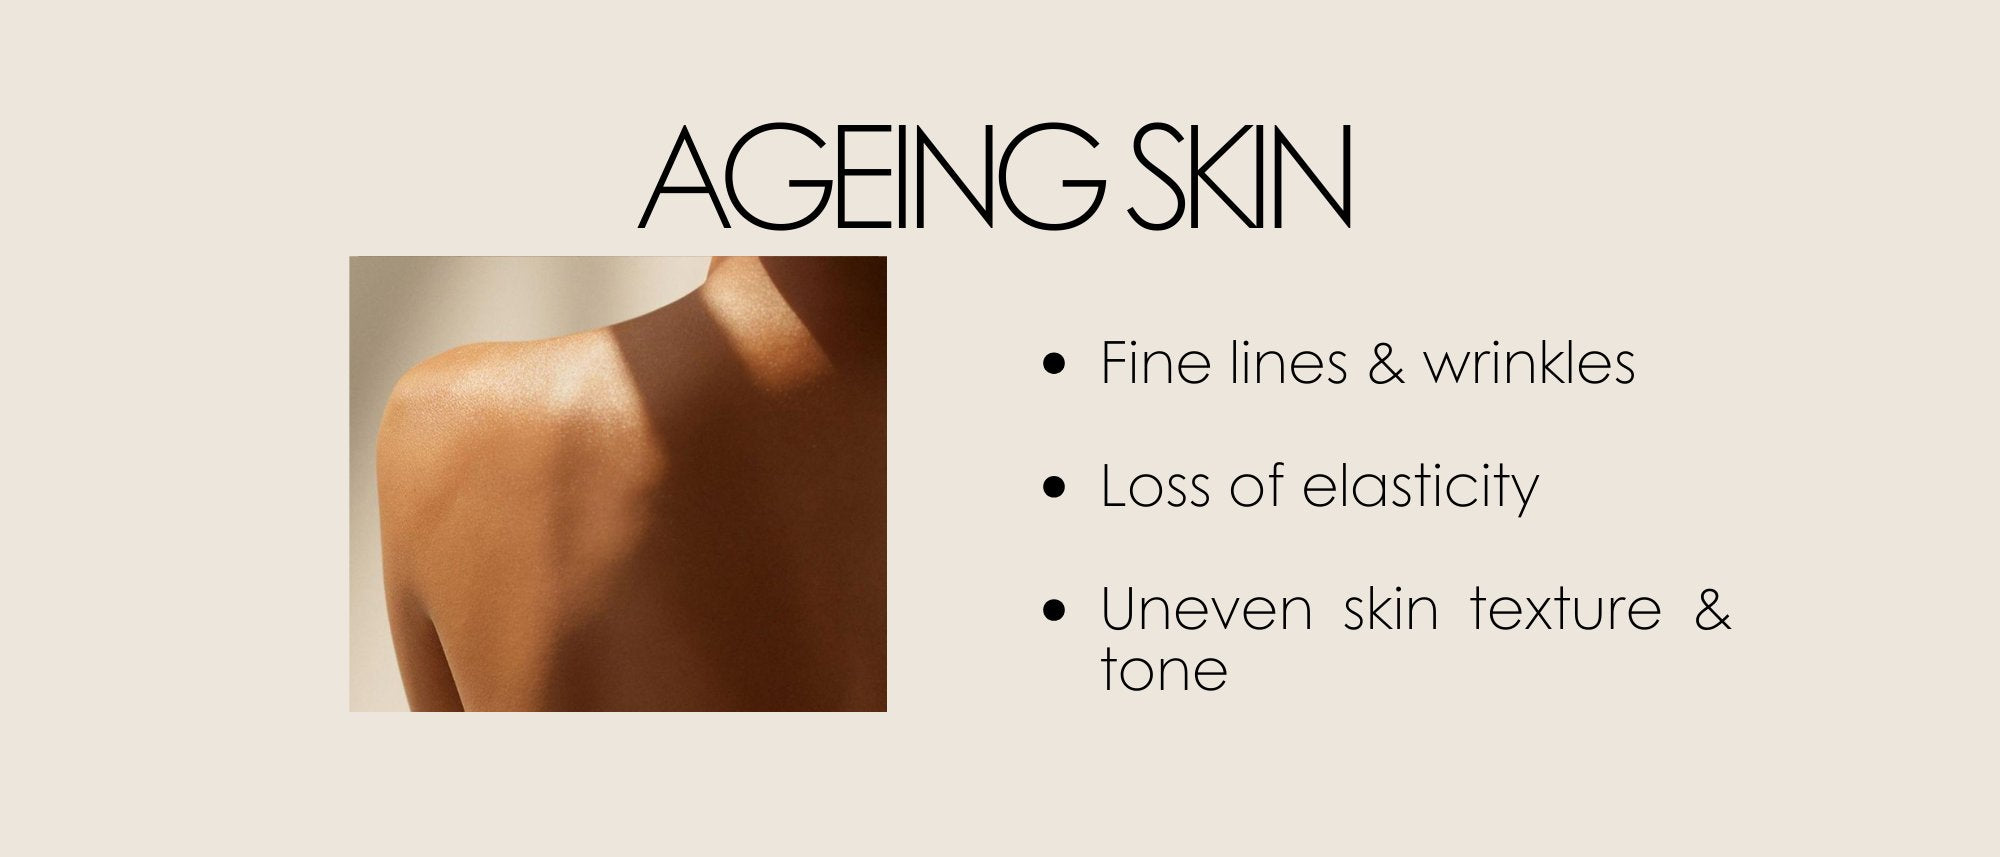 Ageing Skin